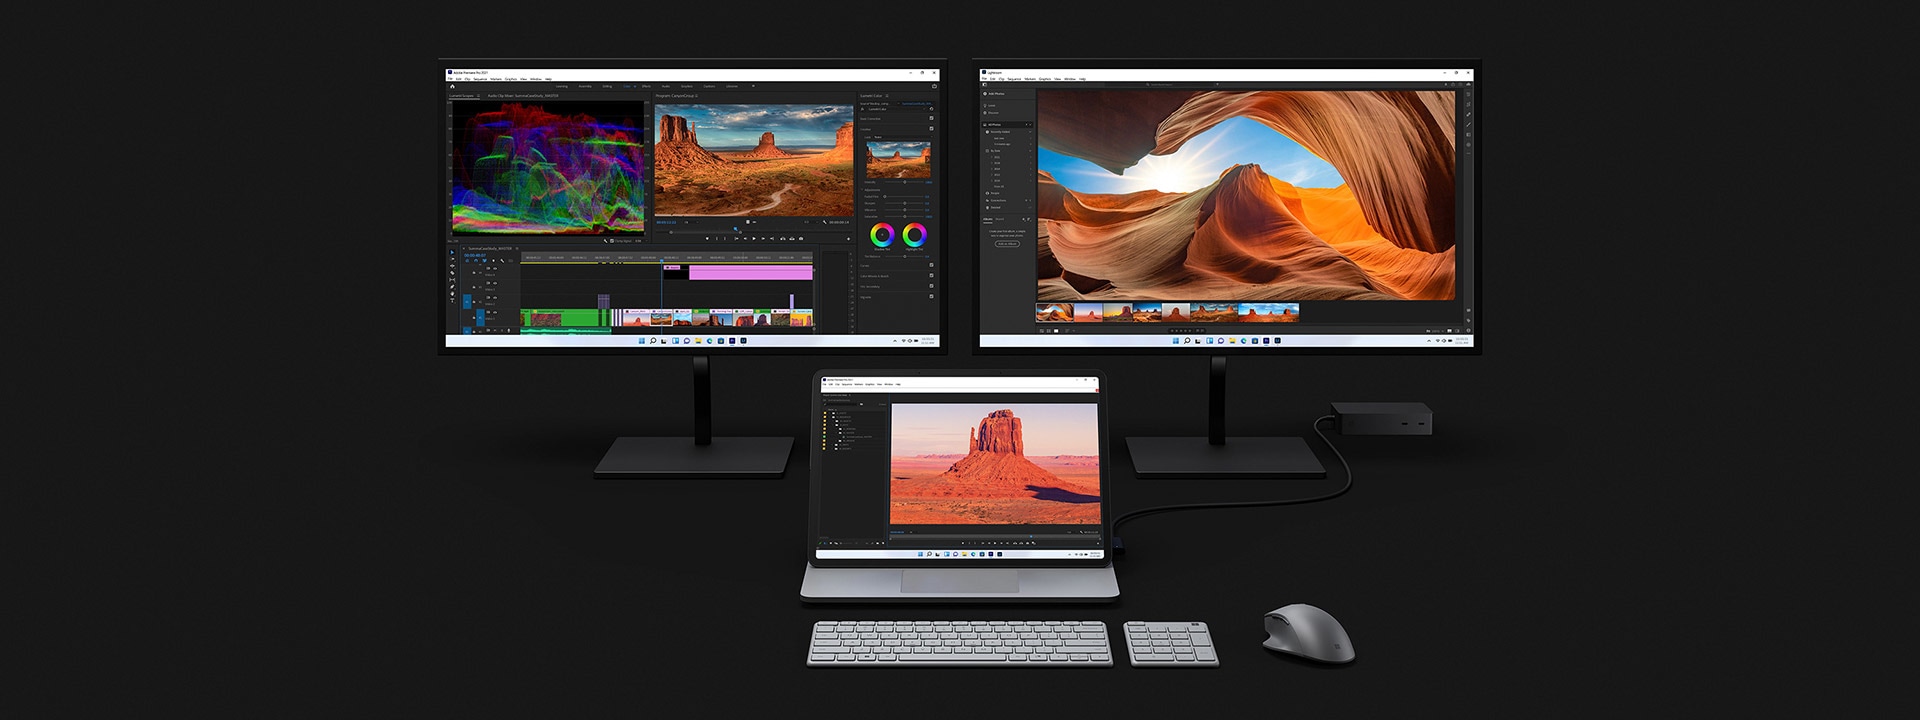 جهاز Surface Laptop Studio أثناء إرسائه على شاشتين أكبر حجمًا أثناء استخدامه لتحرير الفيديو.